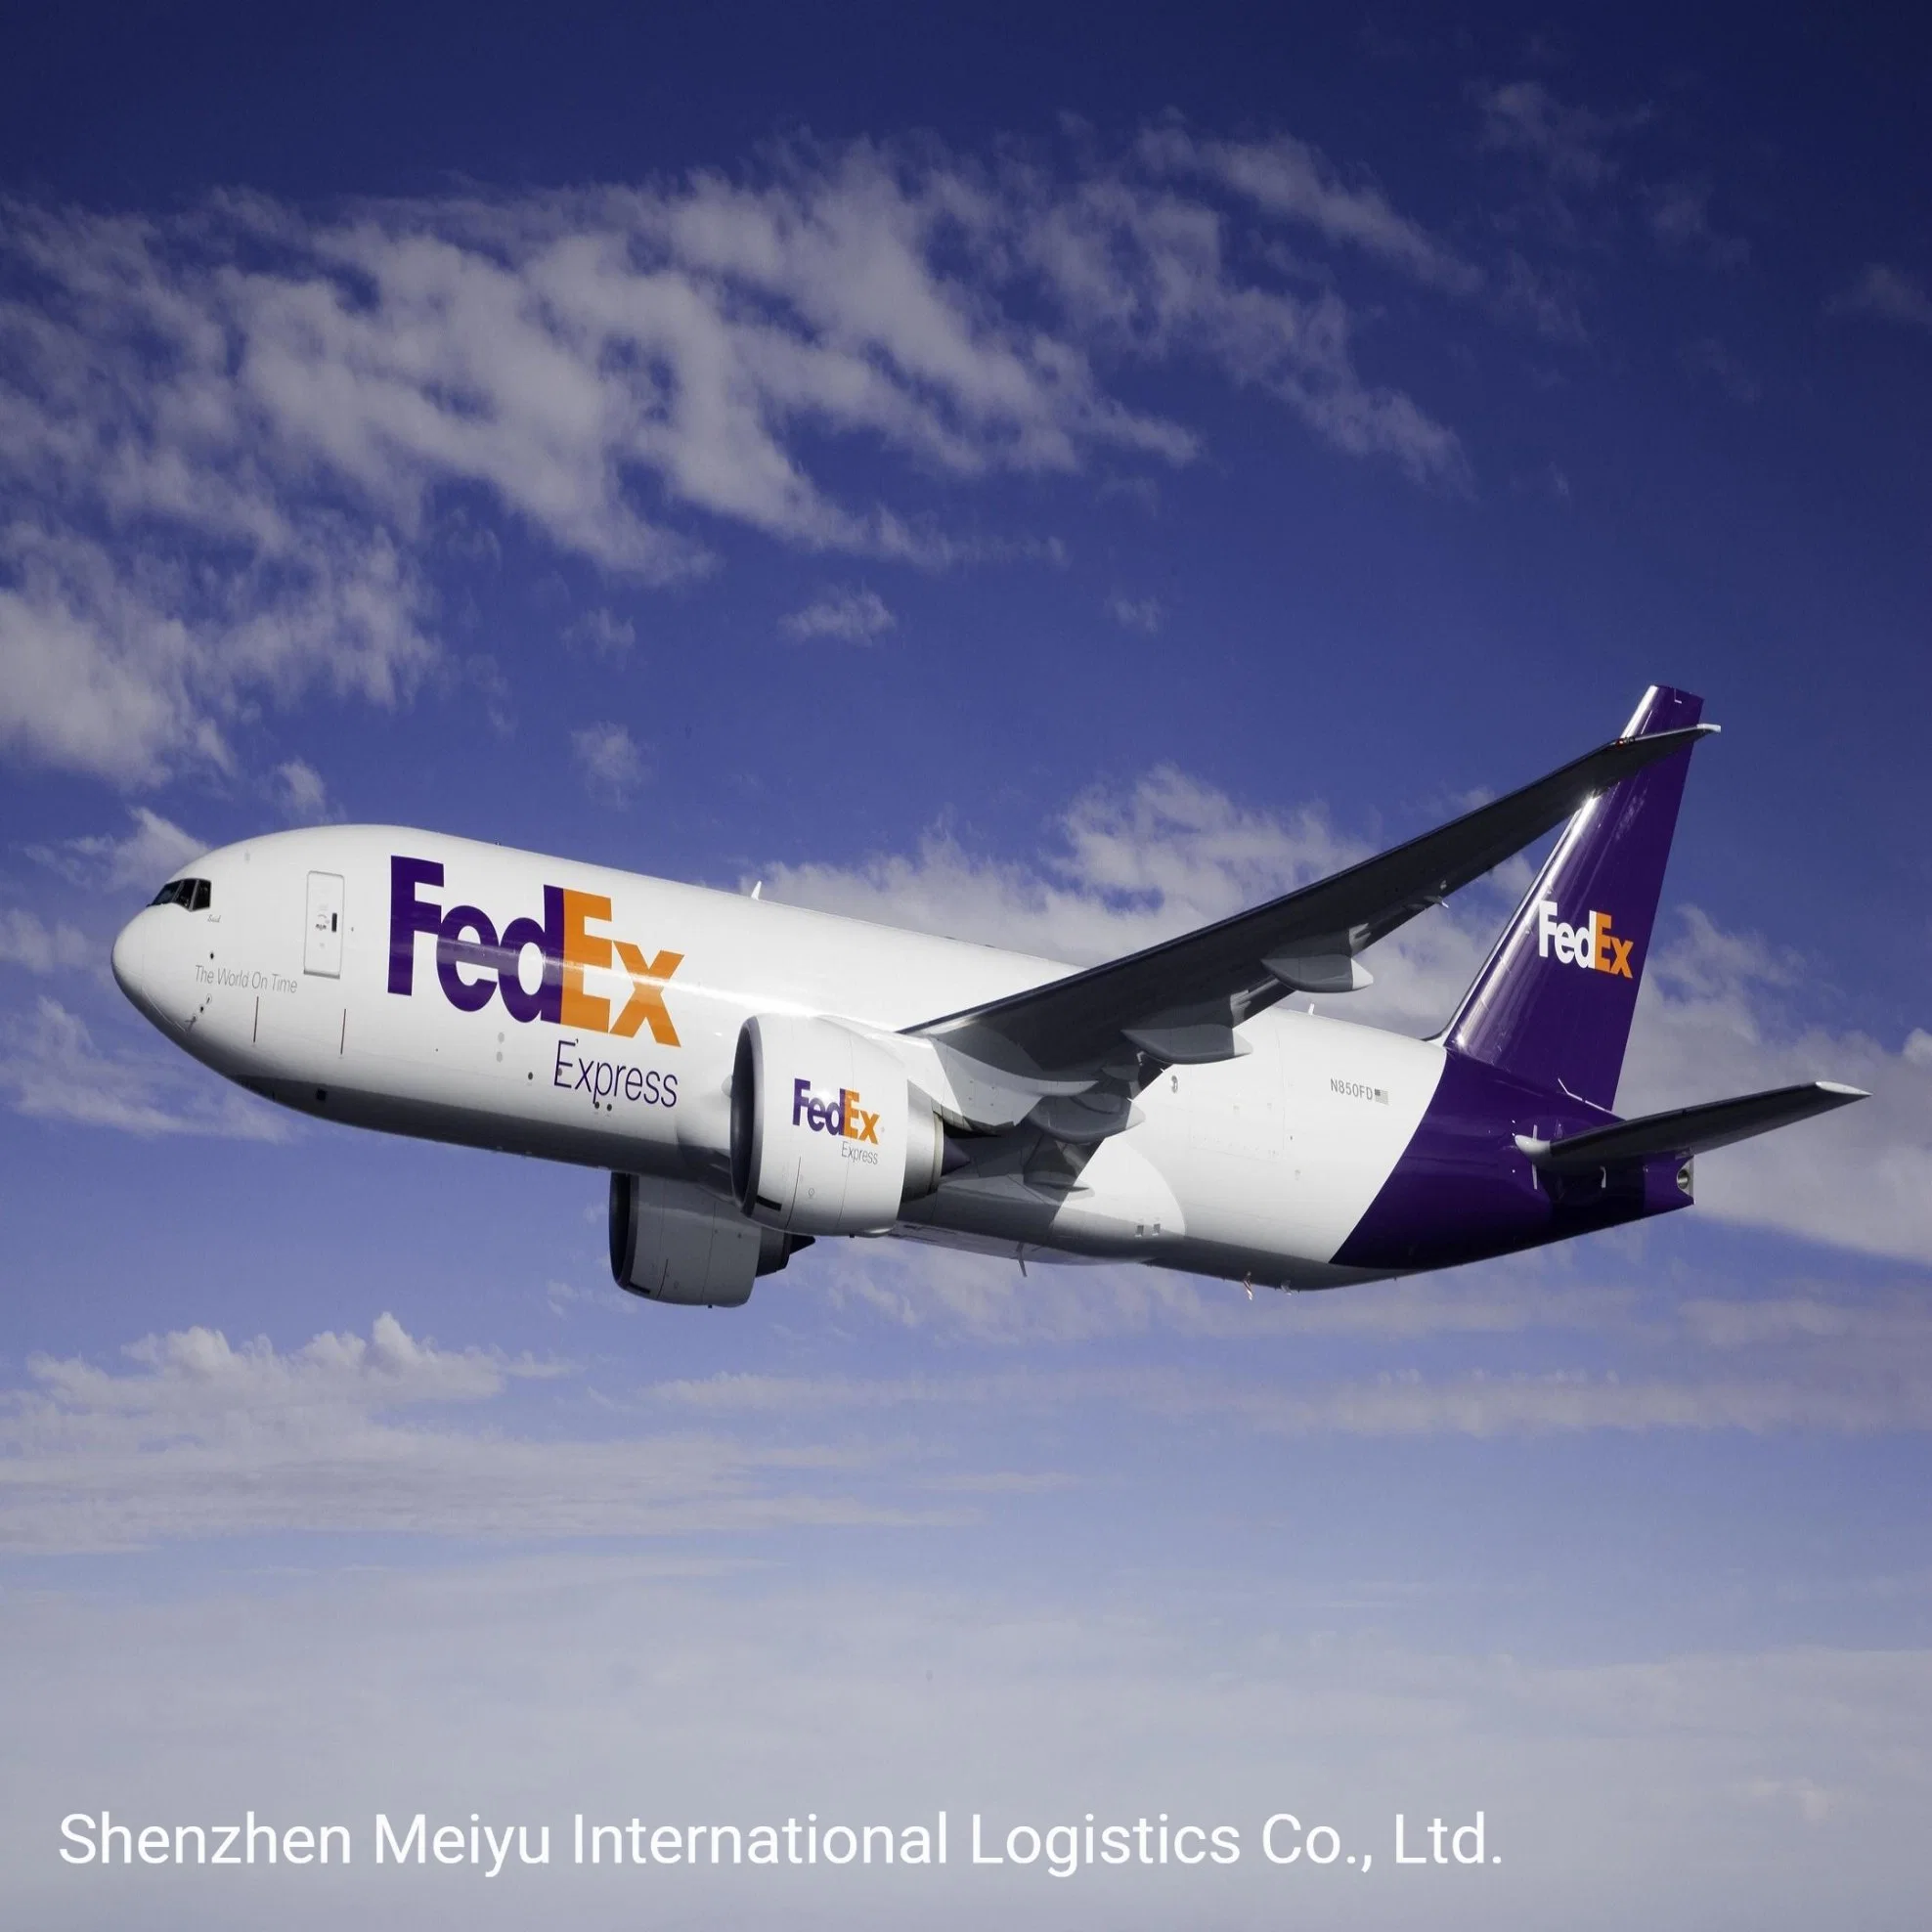 Professioneller DHL/FedEx/UPS/TNT-Versandmitarbeiter von China nach weltweit